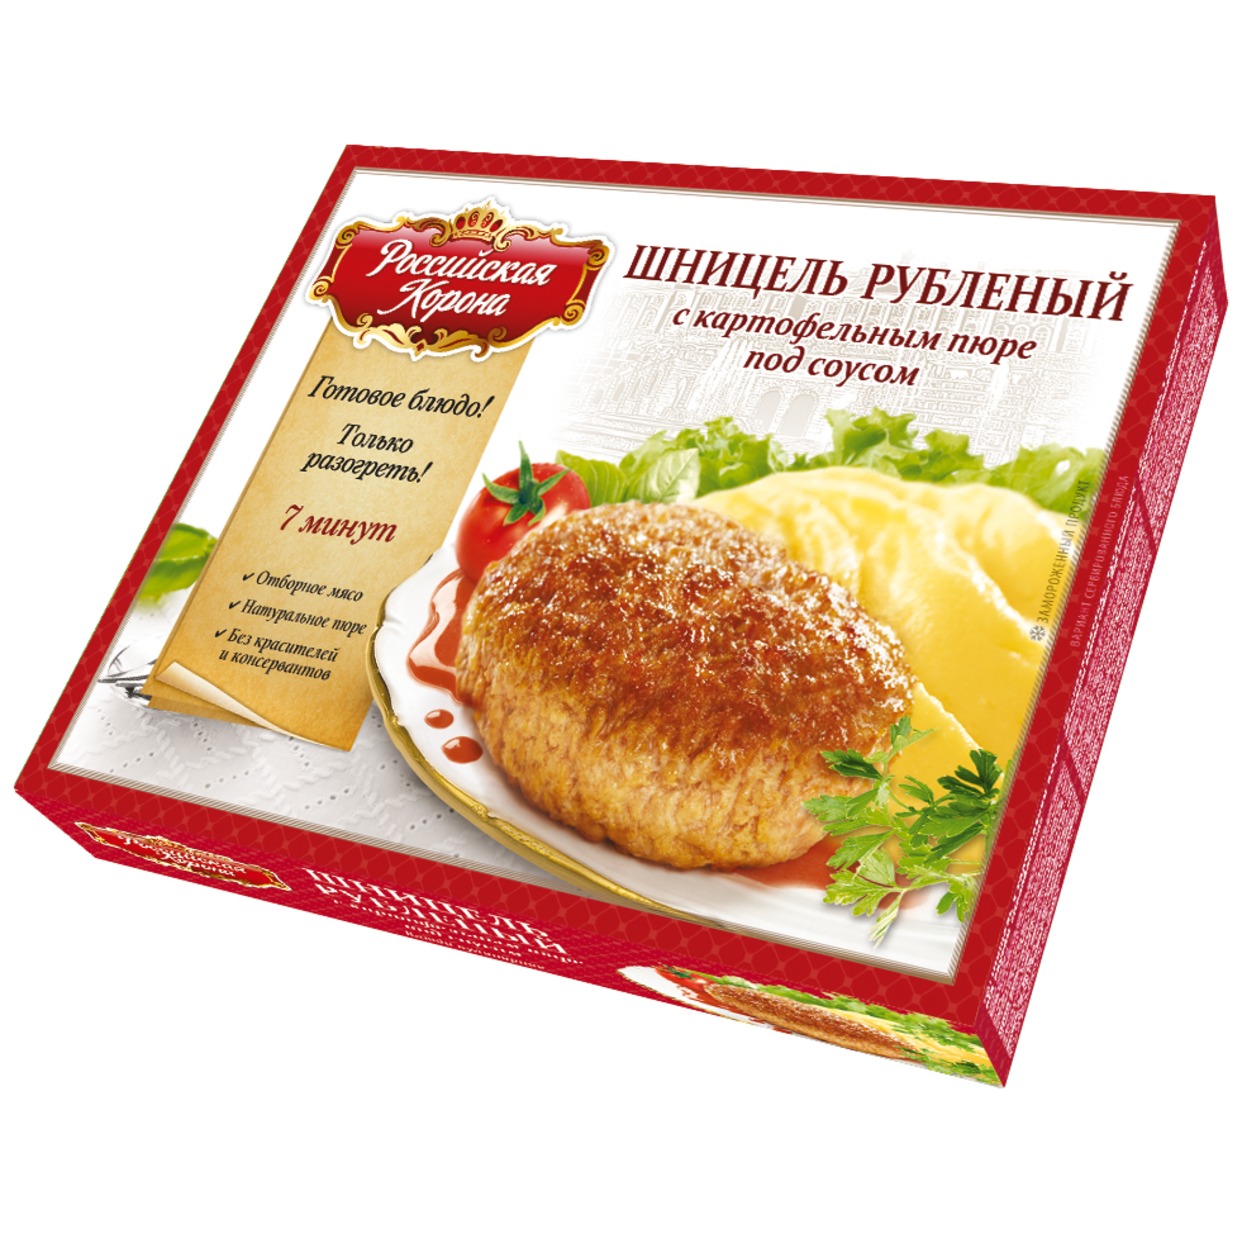 Шницель "Российская Корона" с картофельным пюре под соусом 300г